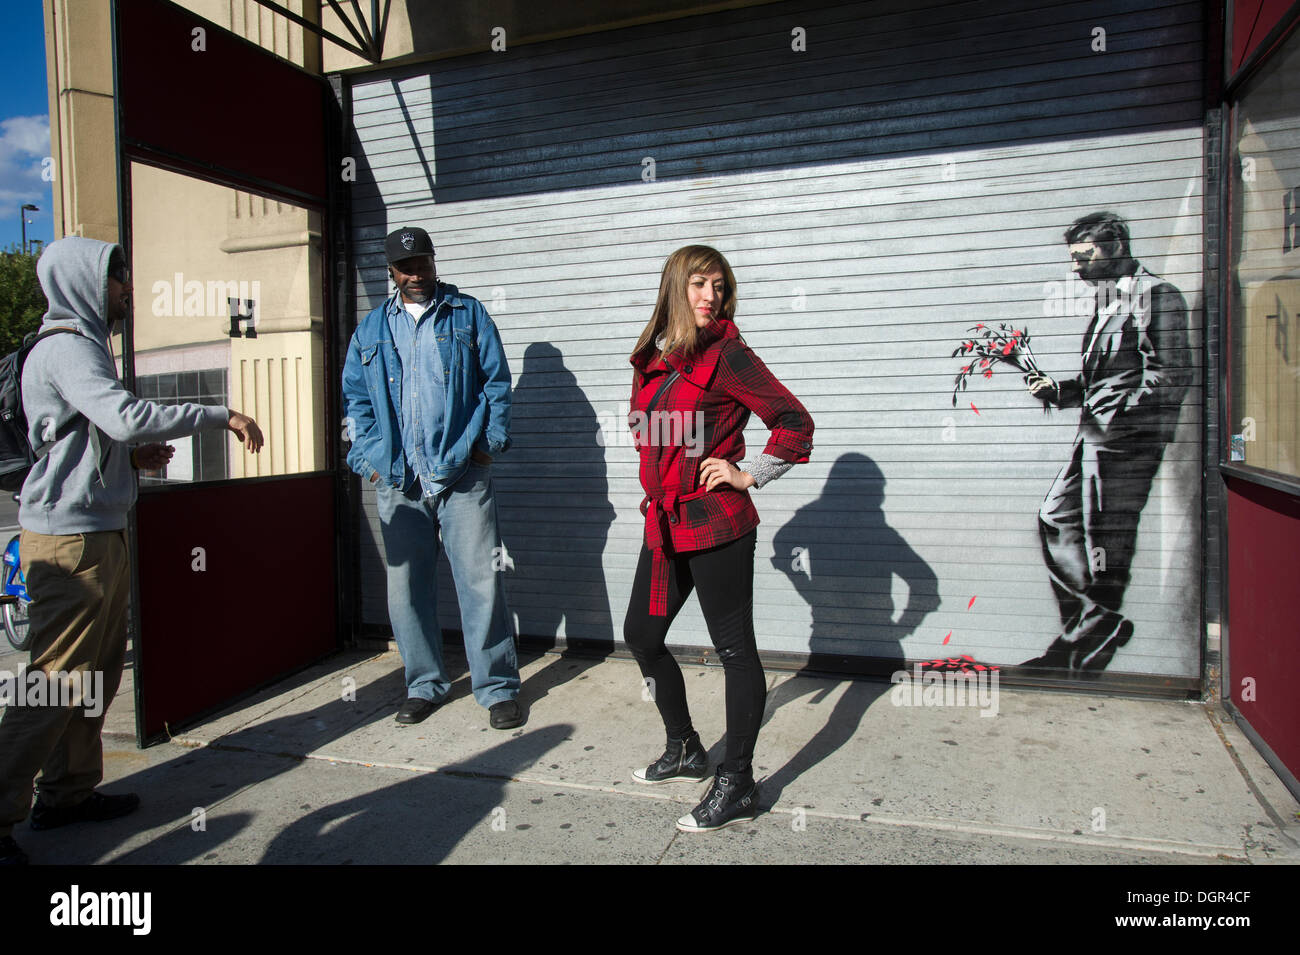 Street appassionati d arte gregge di Larry Flynt's Hustler Club di Hells Kitchen quartiere di New York il Giovedi, Ottobre 24, 2013 per vedere "aspettando invano" la ventiquattresima rata di Banksy graffiti dell'arte. La stampata artwork è sul roll-up porta d'ingresso al gentlemen's club, che ha inviato le guardie di sicurezza al di fuori di proteggere il loro nuovo capolavoro. Il fantomatico artista di strada è la creazione di opere intorno alla città ogni giorno durante il mese di ottobre è chiamato "Meglio fuori rispetto all'. (© Francesca M. Roberts) Foto Stock